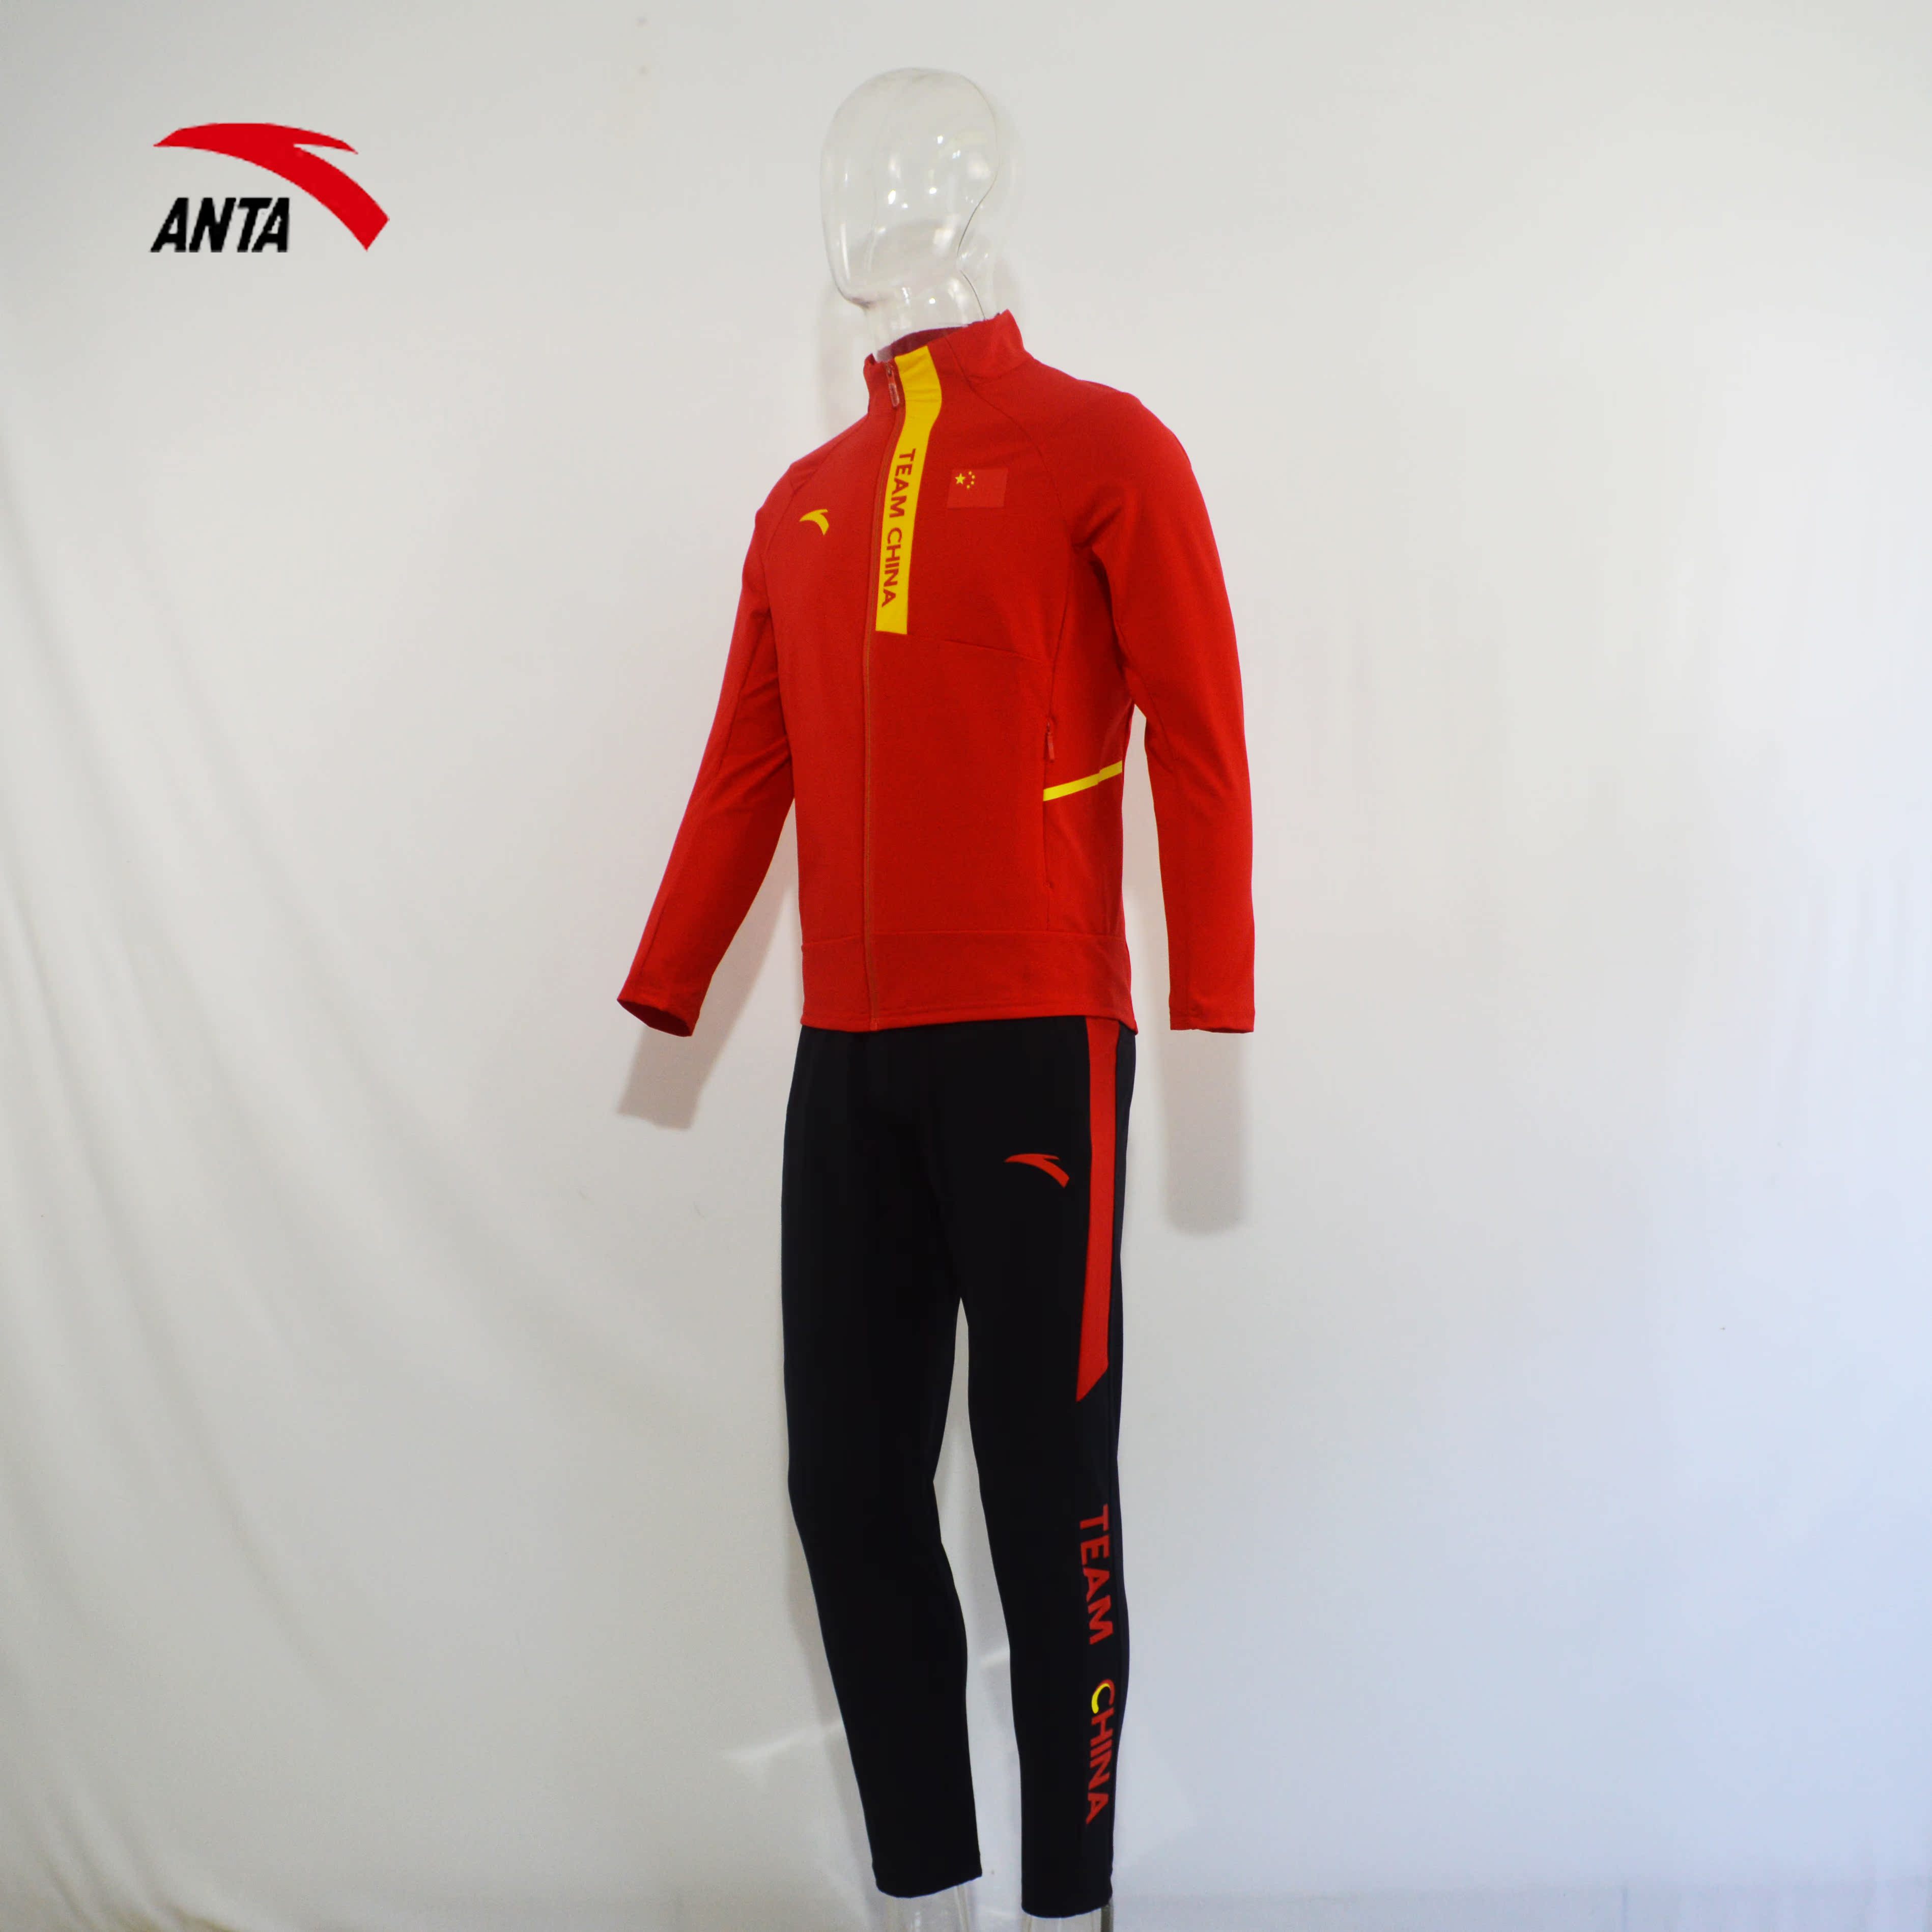 anta/安踏赞助中国代表团国家队红衣黑裤室内领奖服套装国服套装